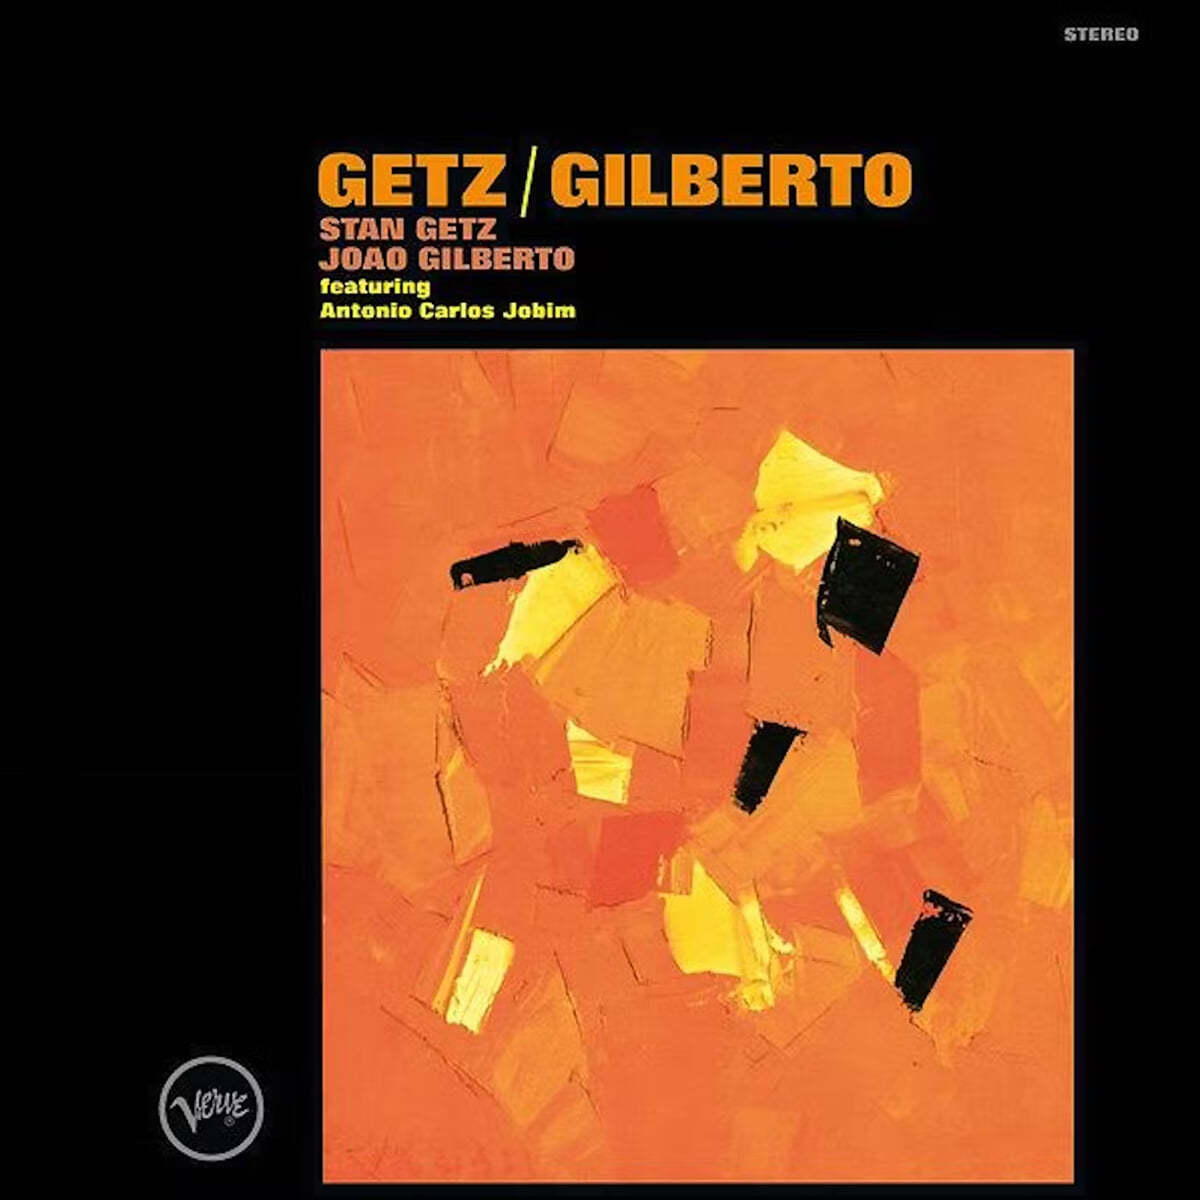 Stan Getz / Joao Gilberto - Getz / Gilberto (스탄 게츠, 조앙 질베르토) [오렌지 컬러 LP]